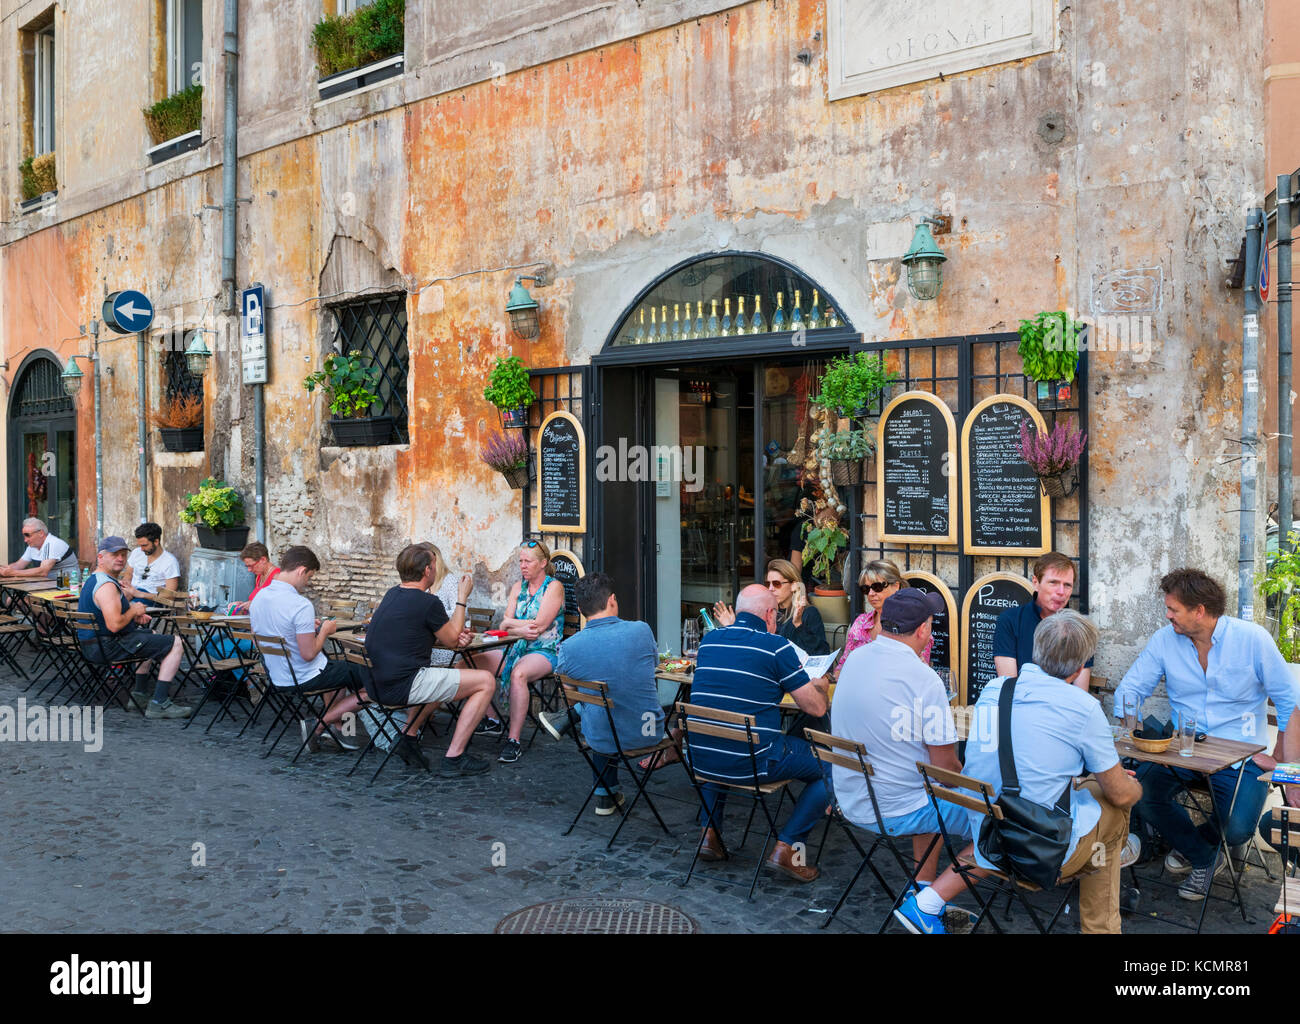 Café avec terrasse sur la Piazza dei Coronari dans le centre historique, Rome, Italie Banque D'Images